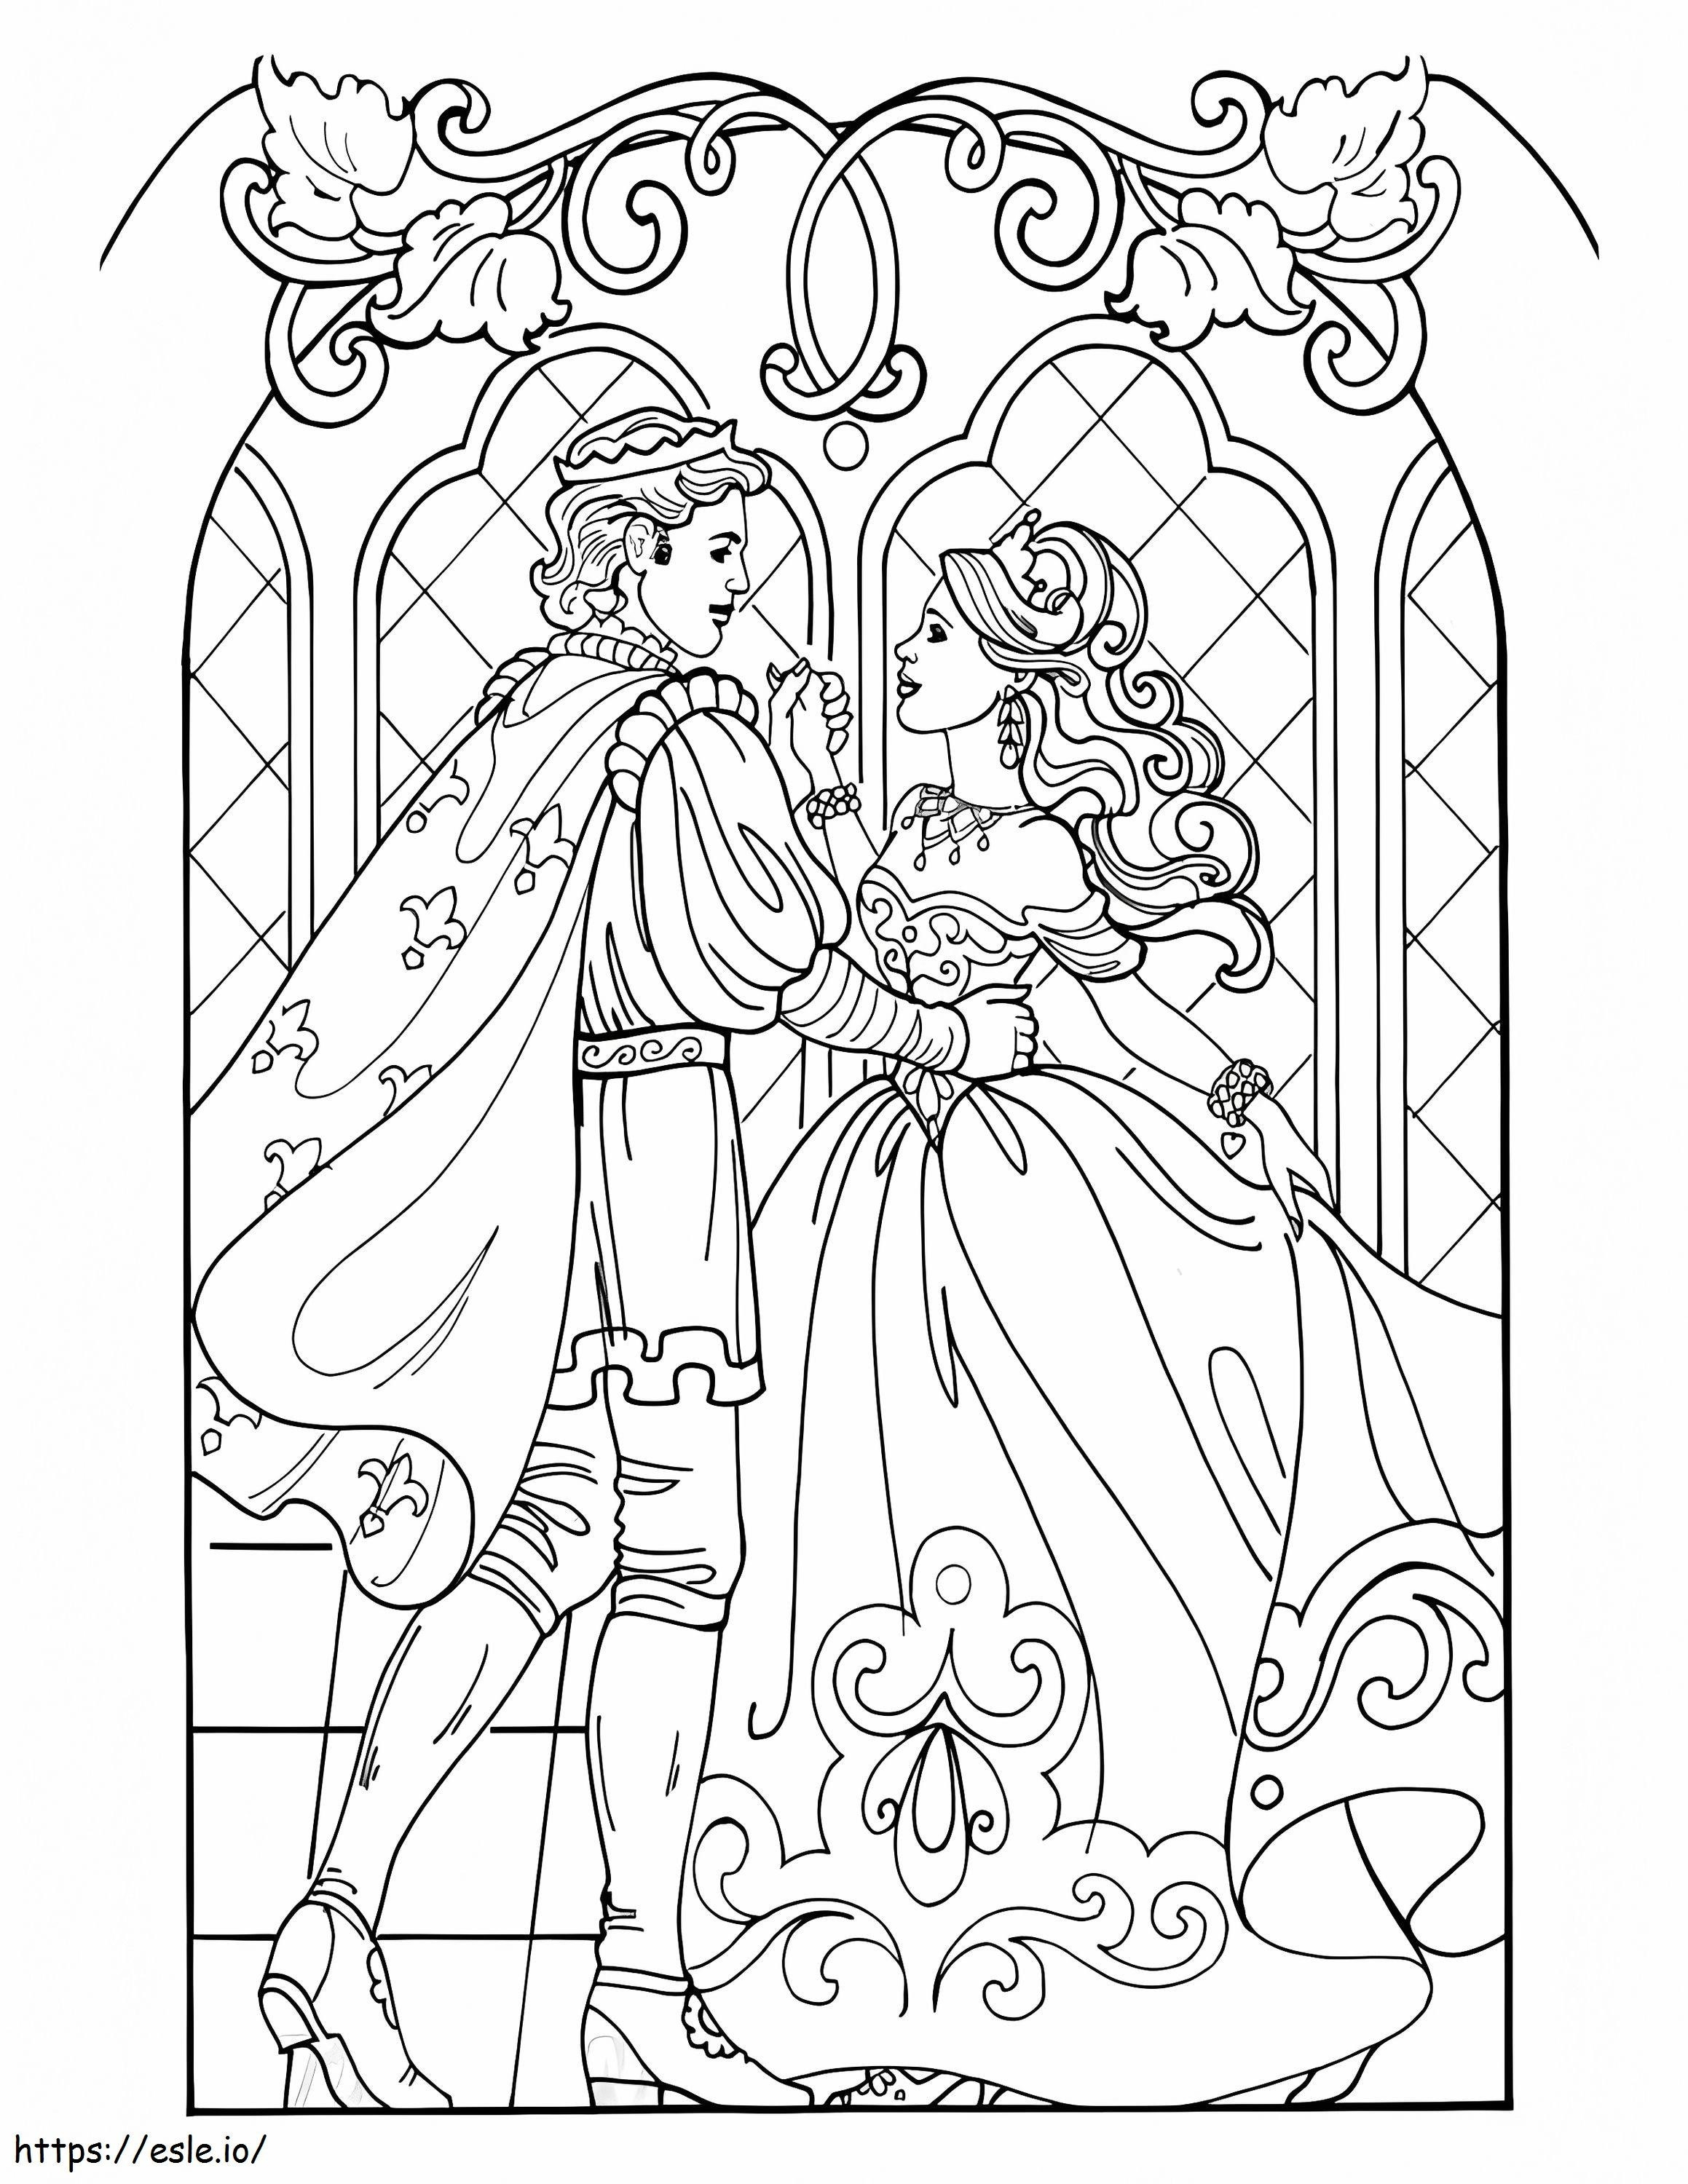 Księżniczka Leonora i książę kolorowanka